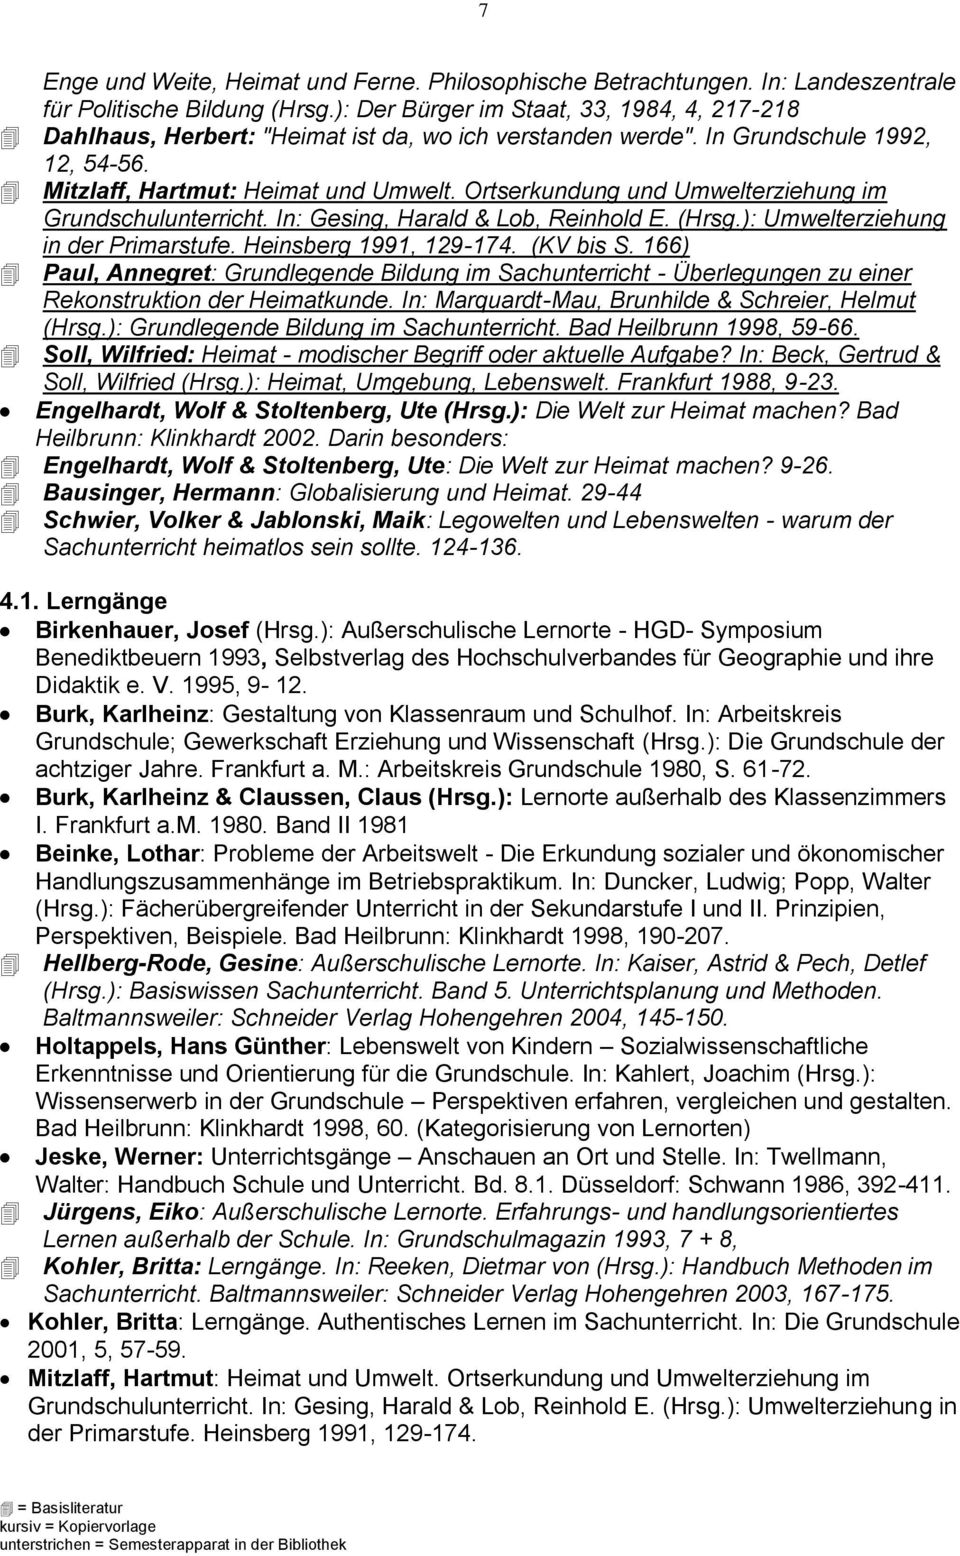 Ortserkundung und Umwelterziehung im Grundschulunterricht. In: Gesing, Harald & Lob, Reinhold E. (Hrsg.): Umwelterziehung in der Primarstufe. Heinsberg 1991, 129-174. (KV bis S.